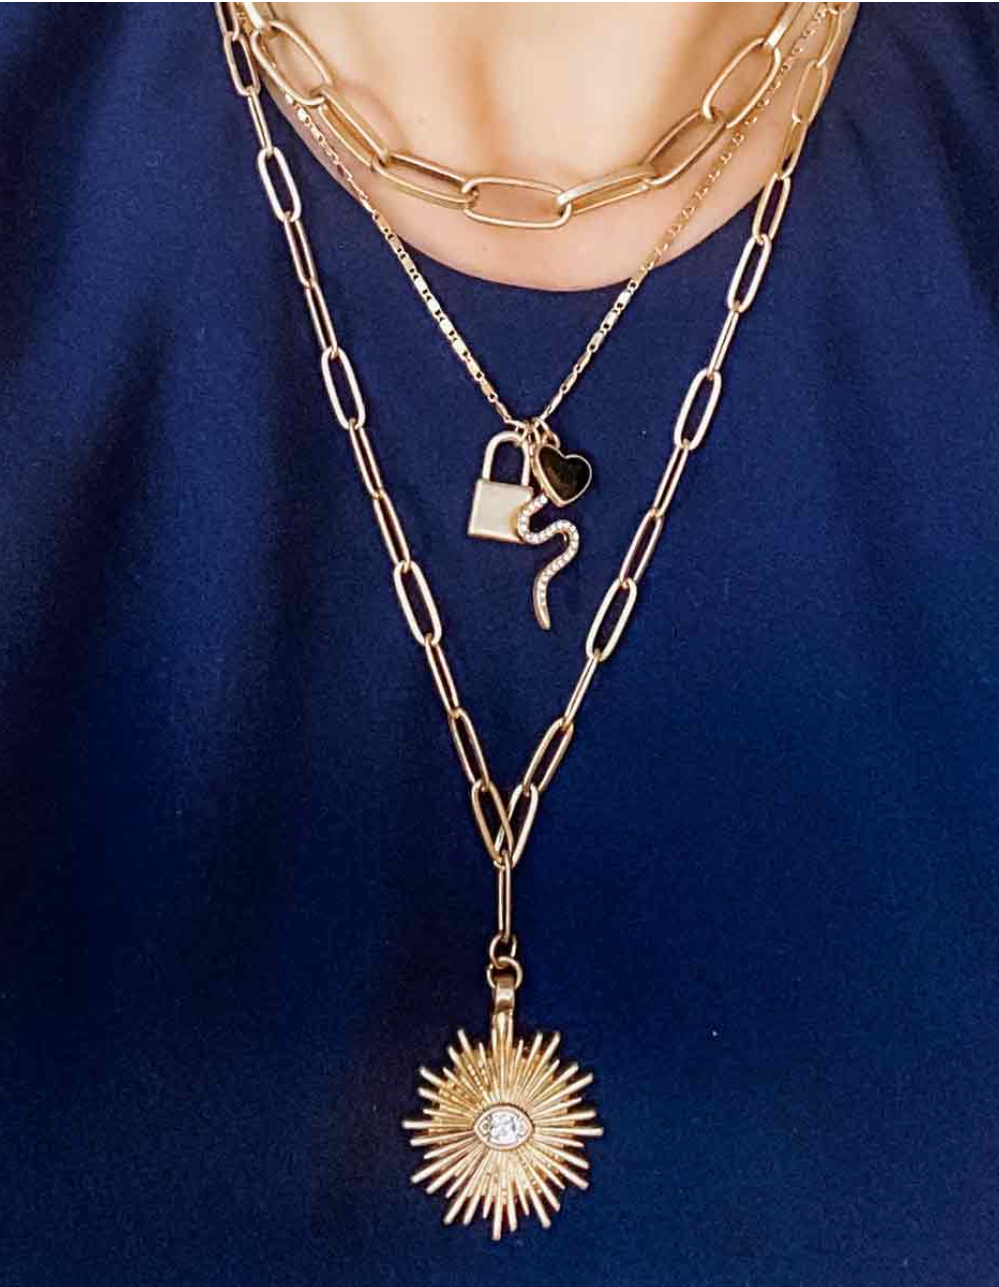 Sunburst Paperclip Chain Necklace